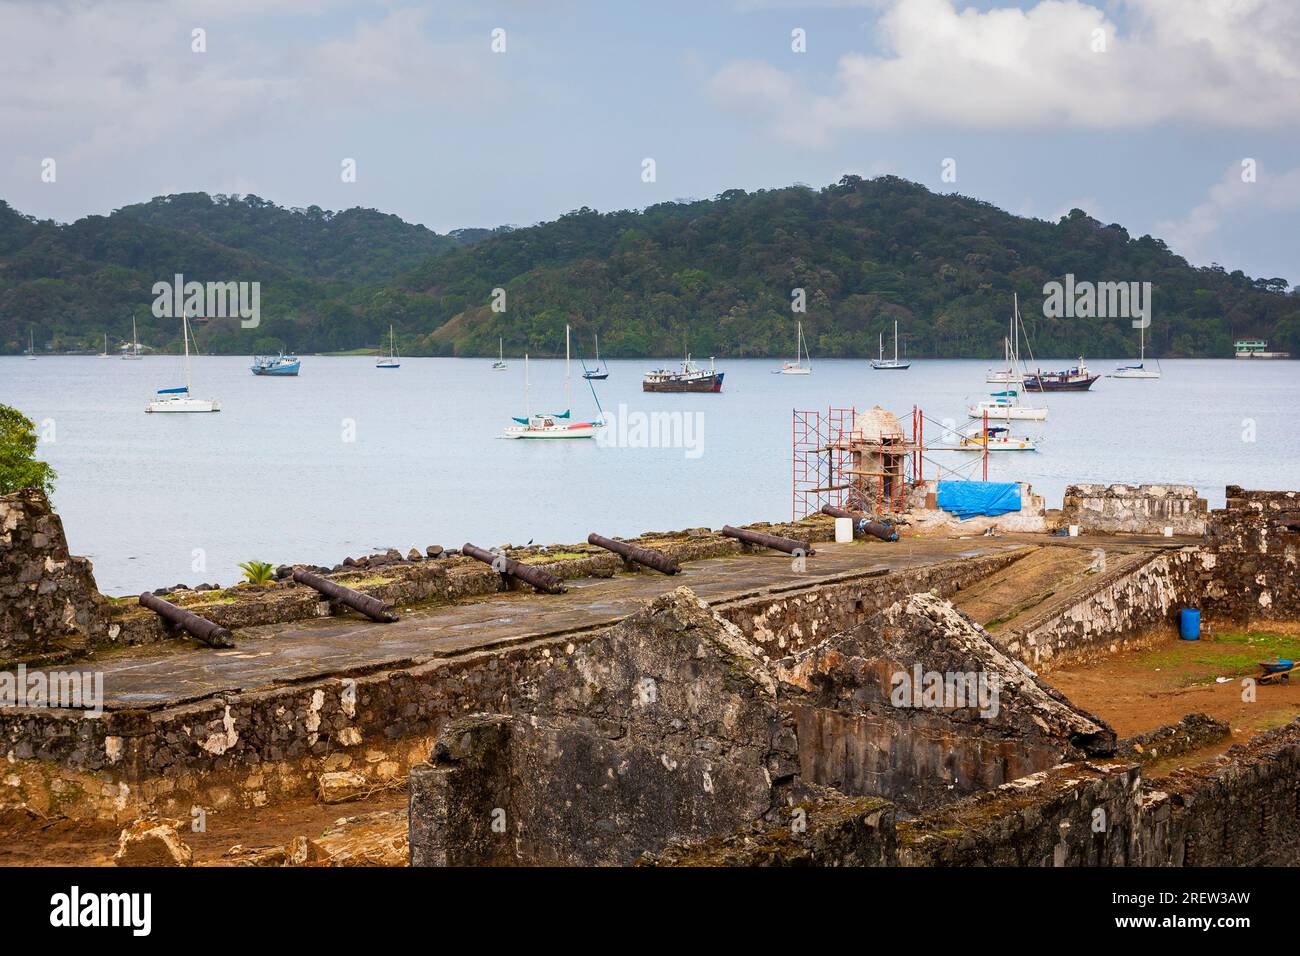 The Fuerte Santiago fortress in Portobelo village, Colon province, Republic of Panama, Central America. Stock Photo